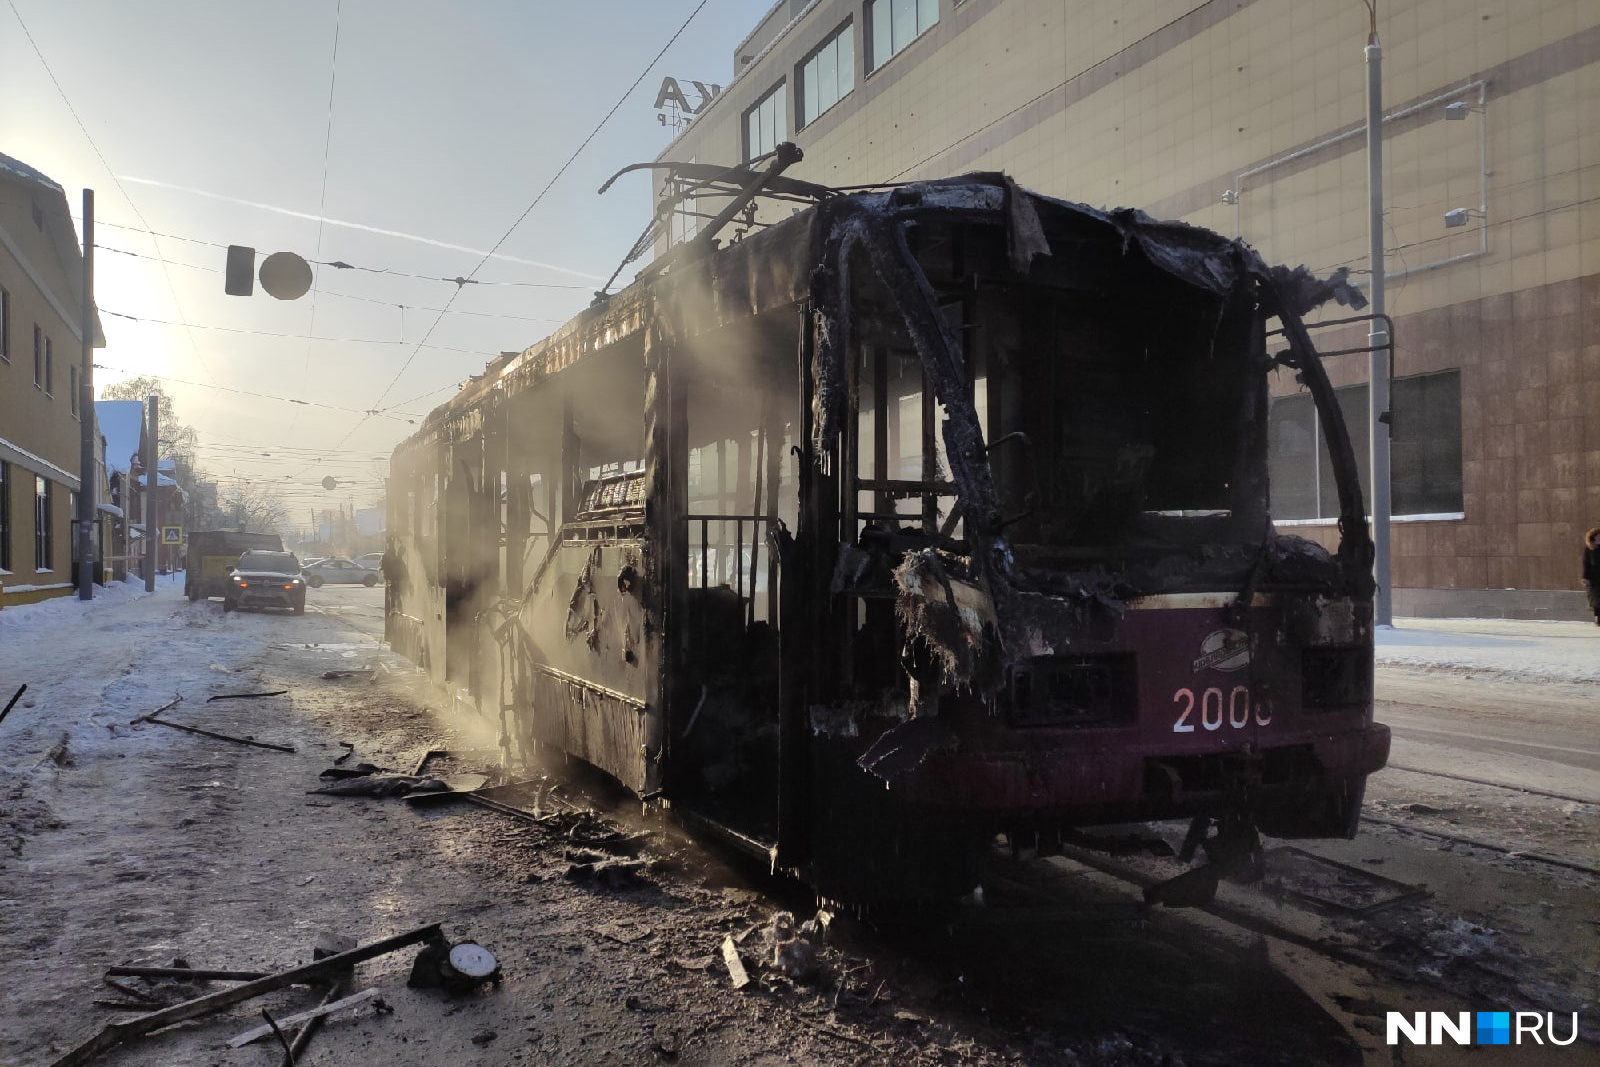 Сгорел трамвай в Нижнем Новгороде 23 декабря. Пожар трамвая в Нижнем Новгороде. В Нижнем сгорел трамвай. 23 декабря 2020 г